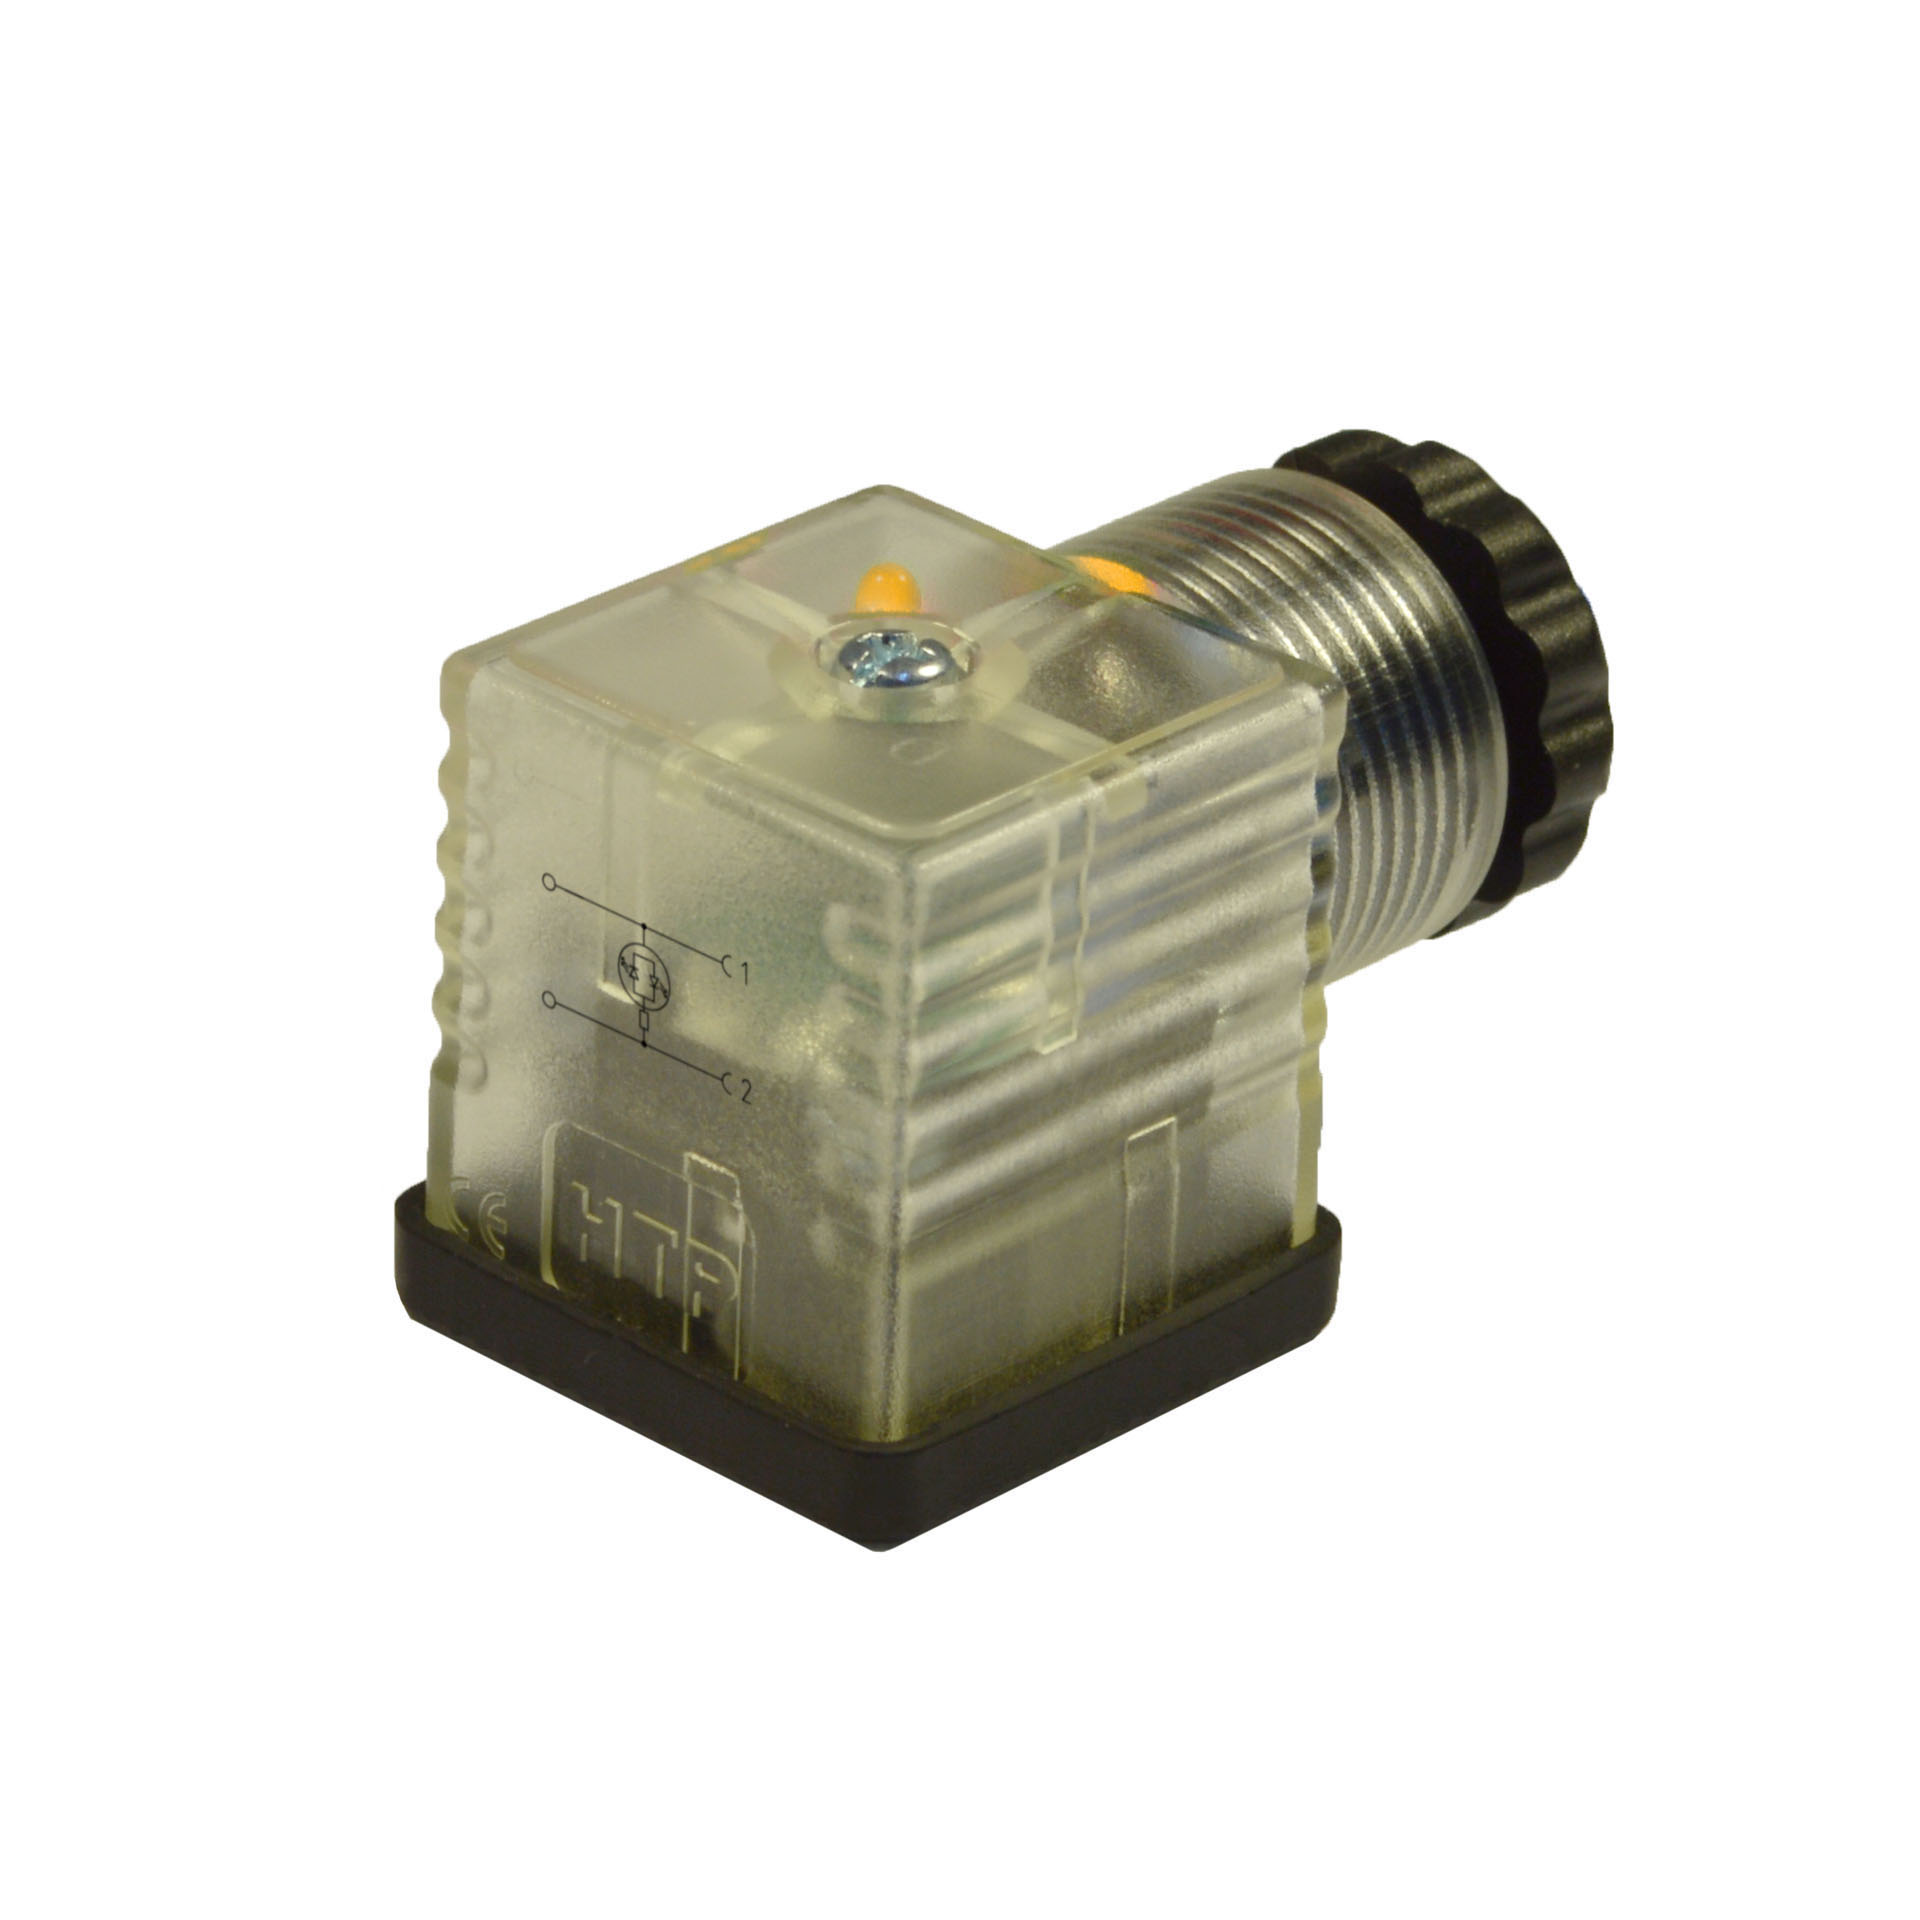 EN175301-803/A a cablare,2p+T(h.12),LED giallo,230VAC/DC,PG9/11unif.